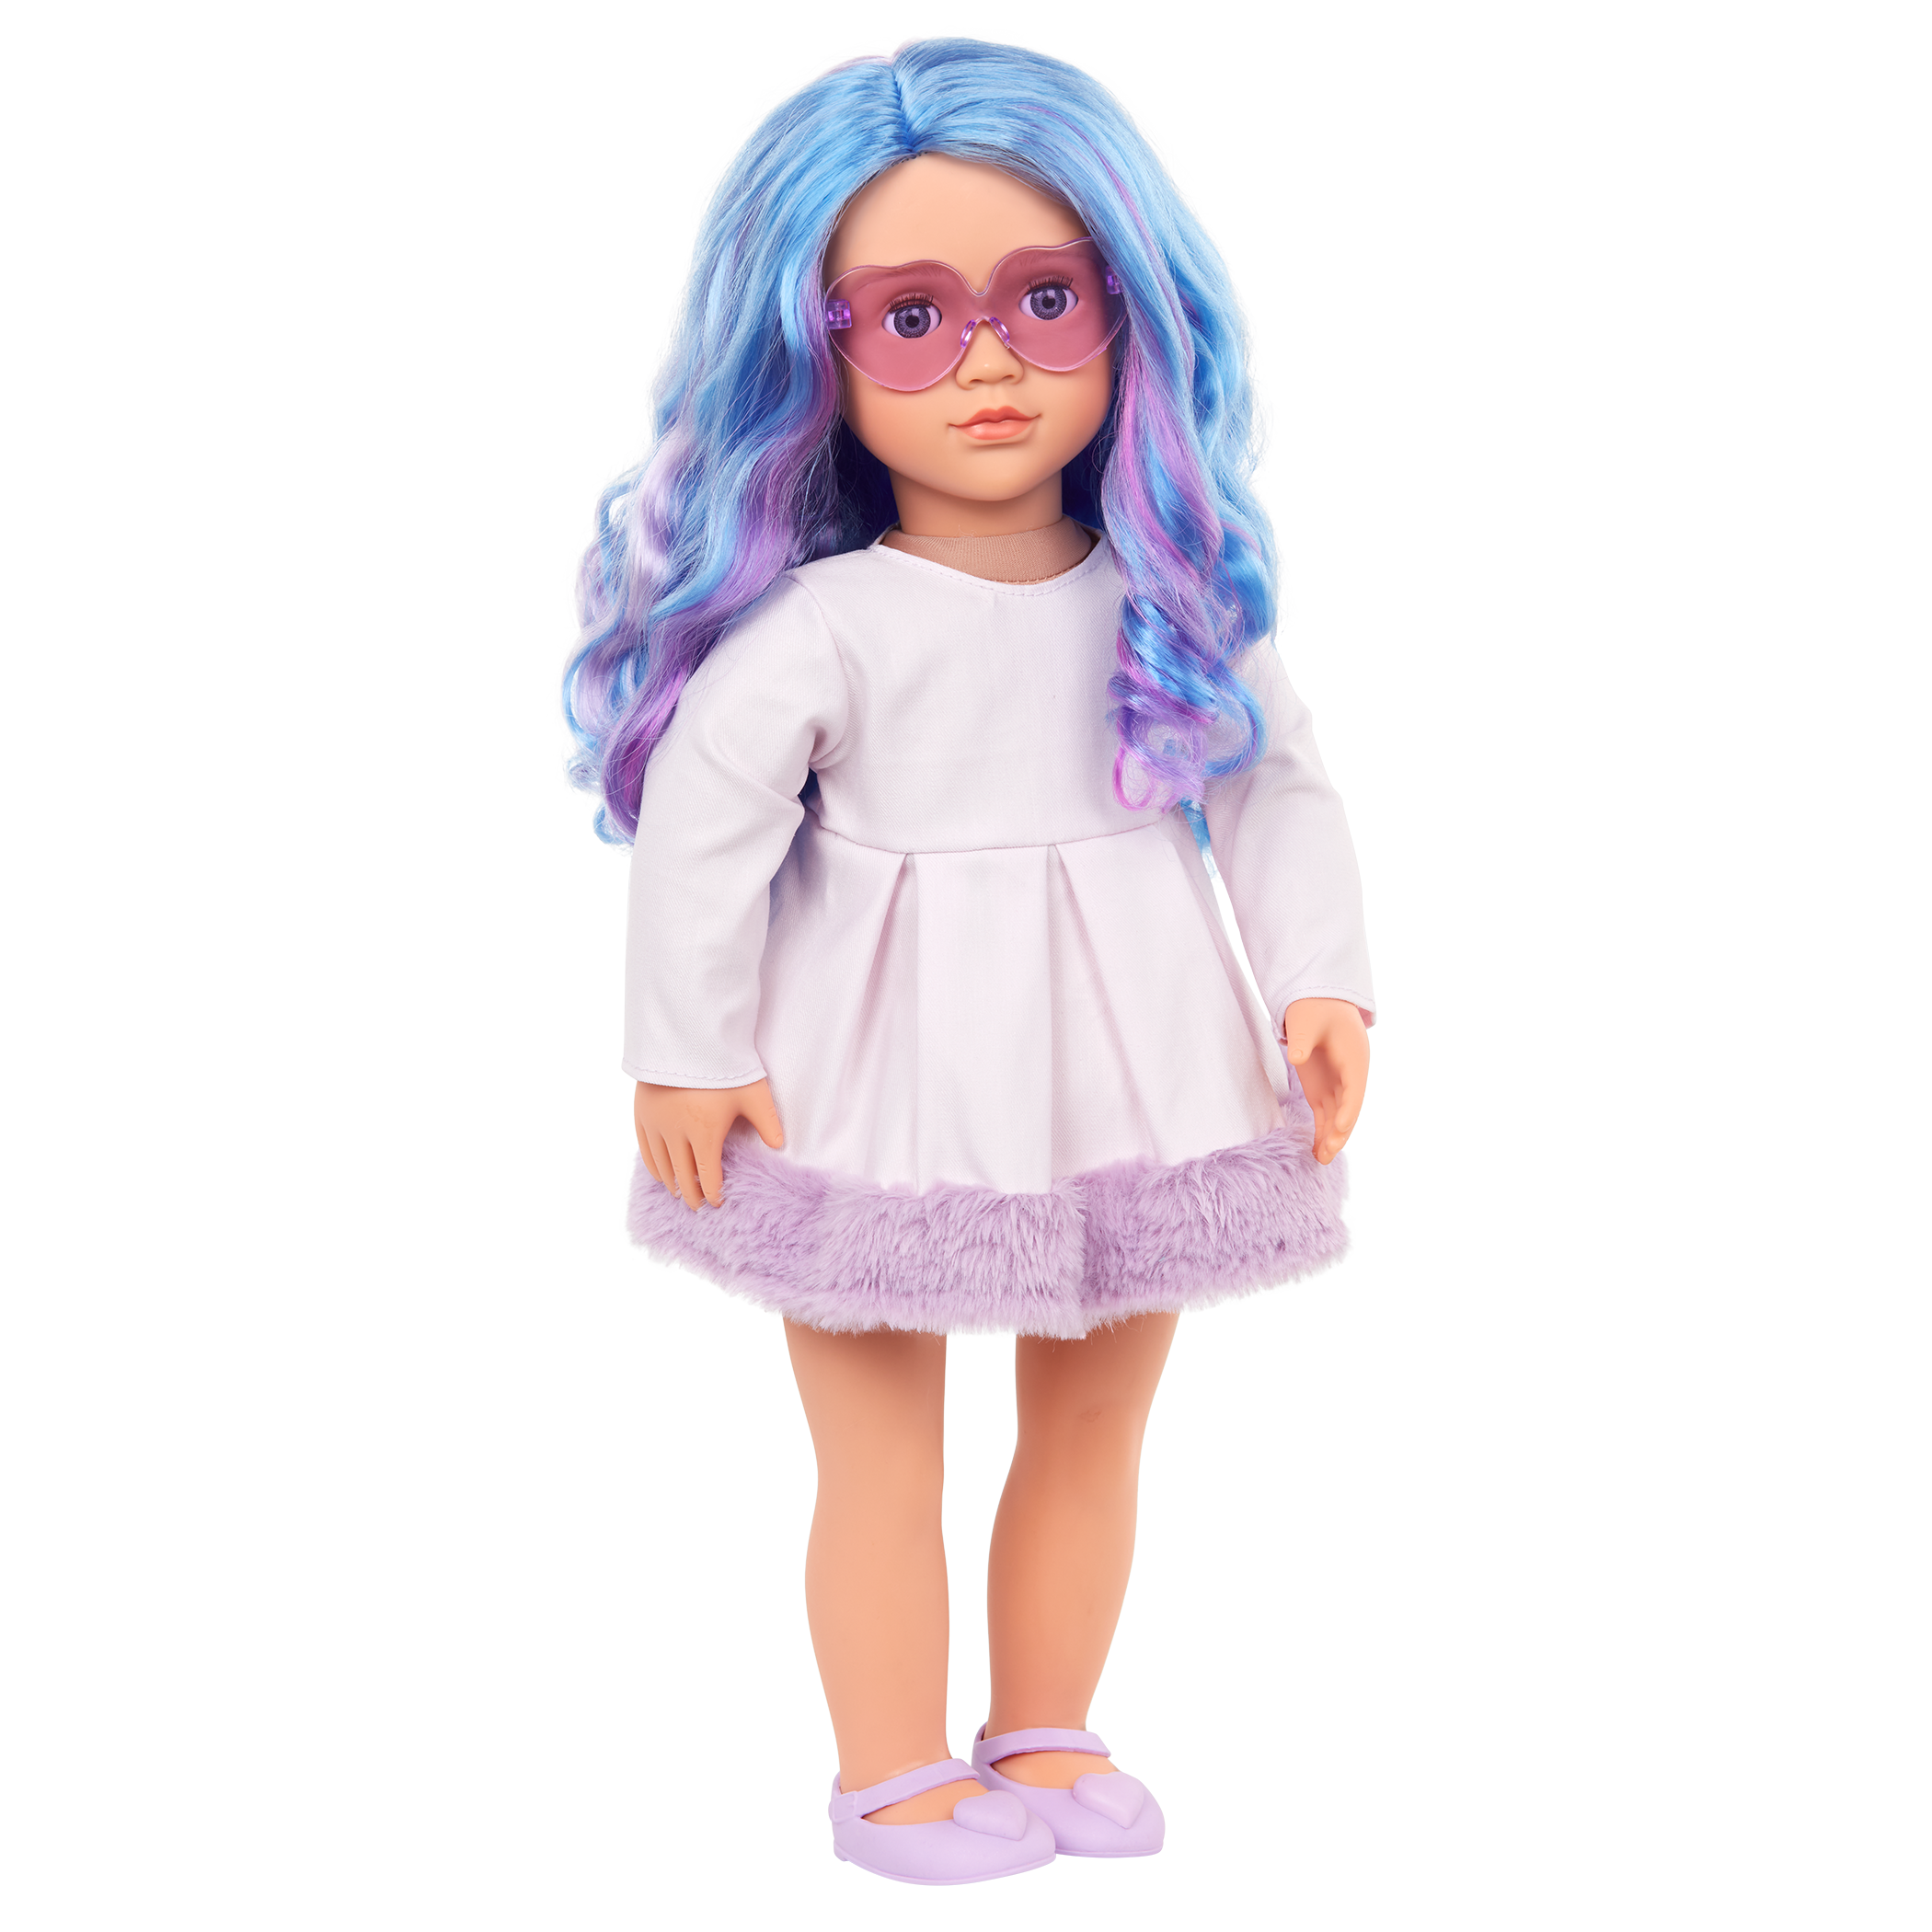 Bambola fashion da 46 cm con capelli multicolore